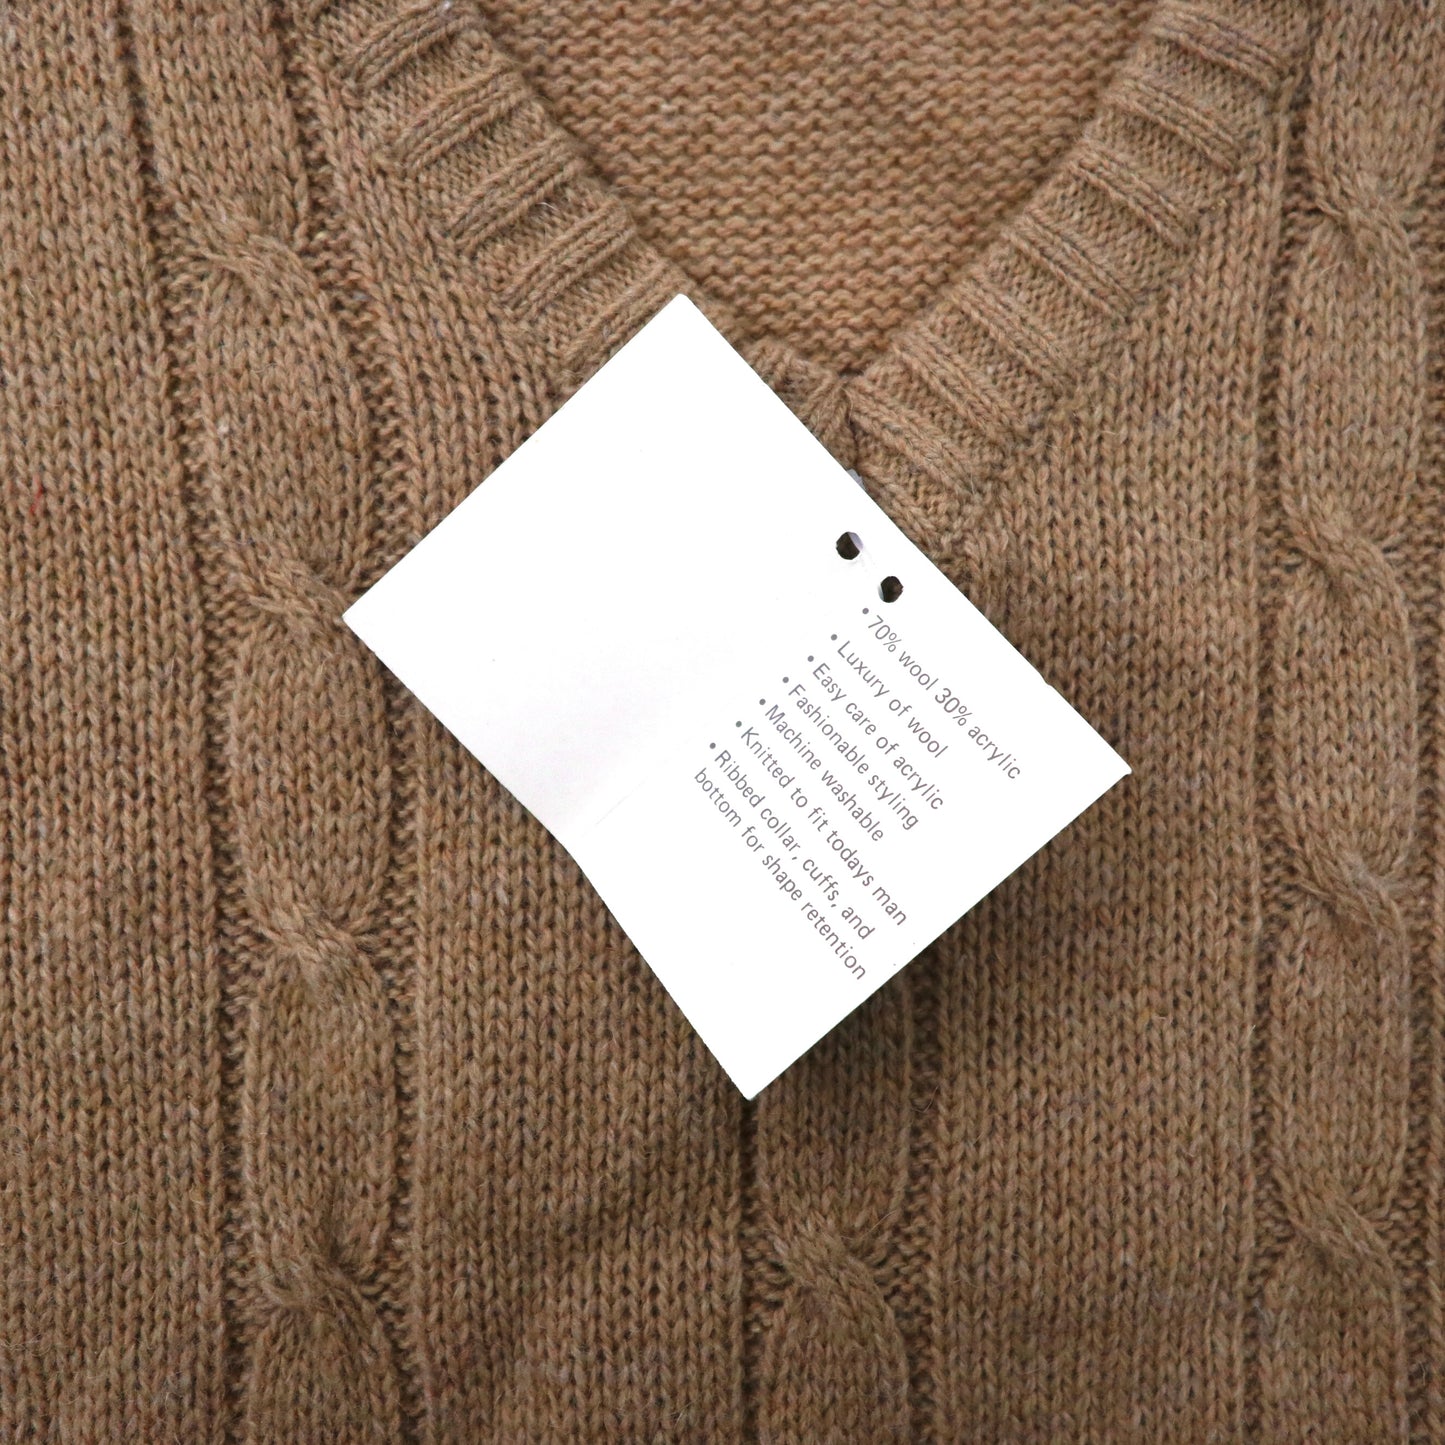 Fisherman Knit Vest アランニット ベスト XL ベージュ ウール ケーブル編み HILL & ARCHER グアム製 未使用品